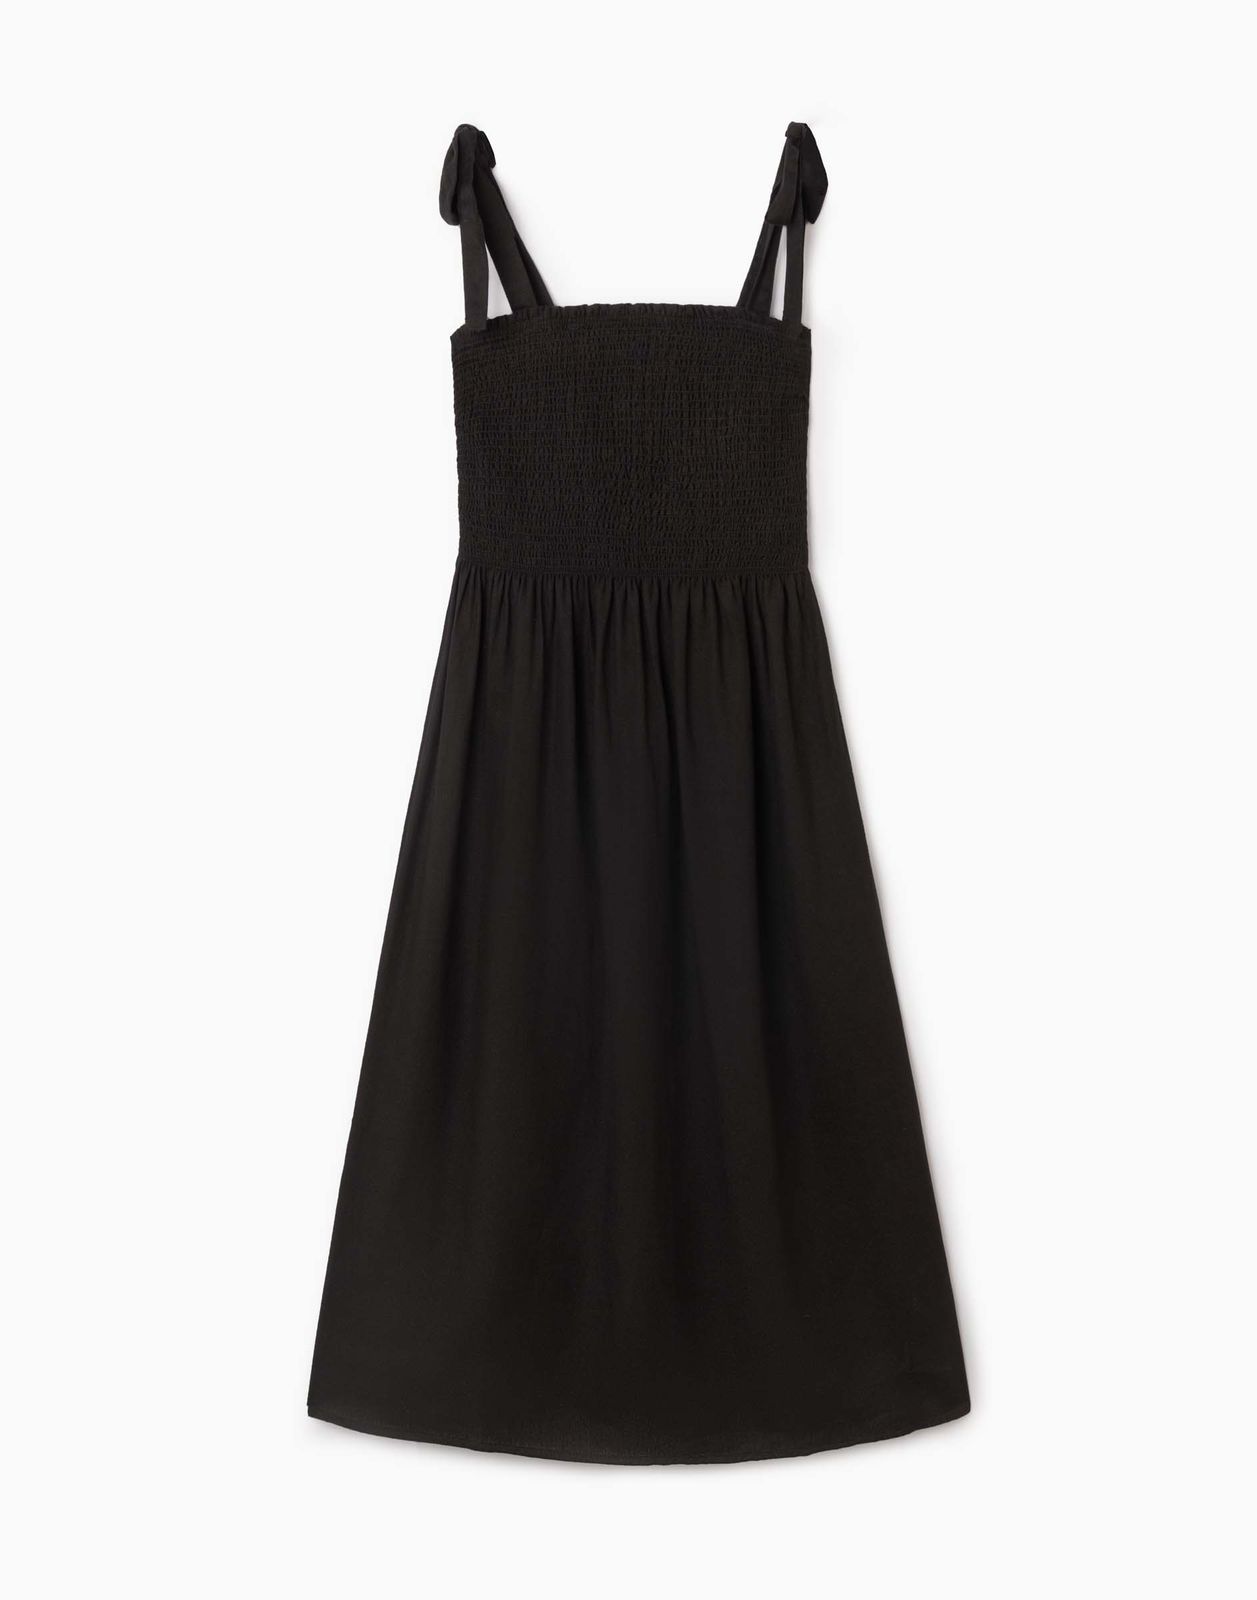 Платье женское Gloria Jeans GDR028414 черный M/170